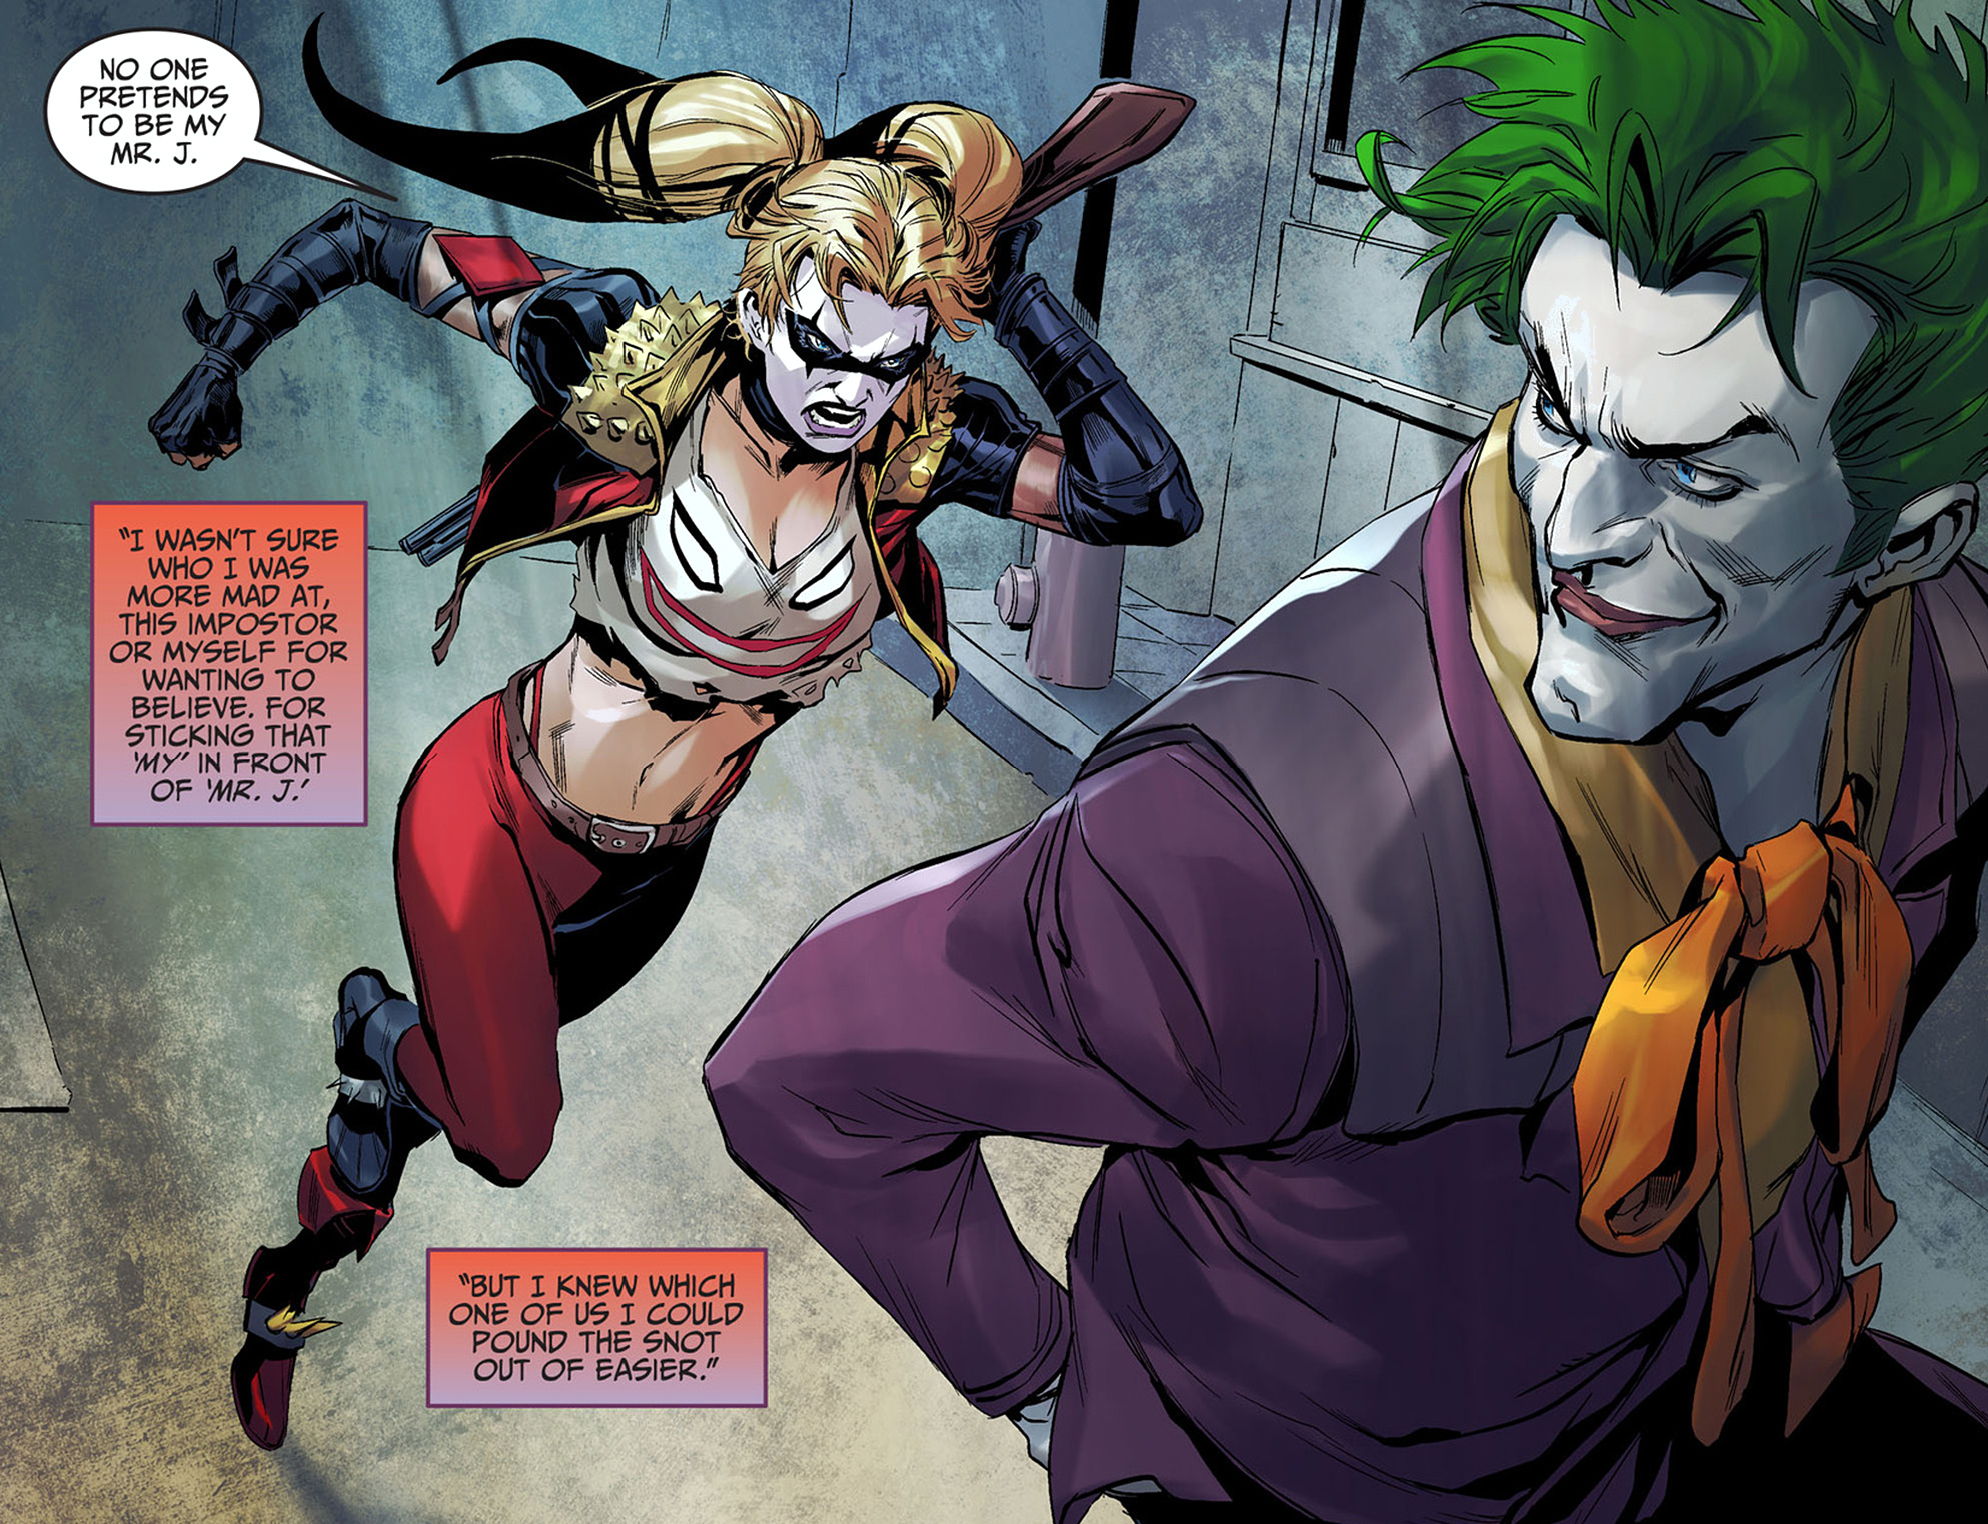 Harley Quinn Injustice Insurgency